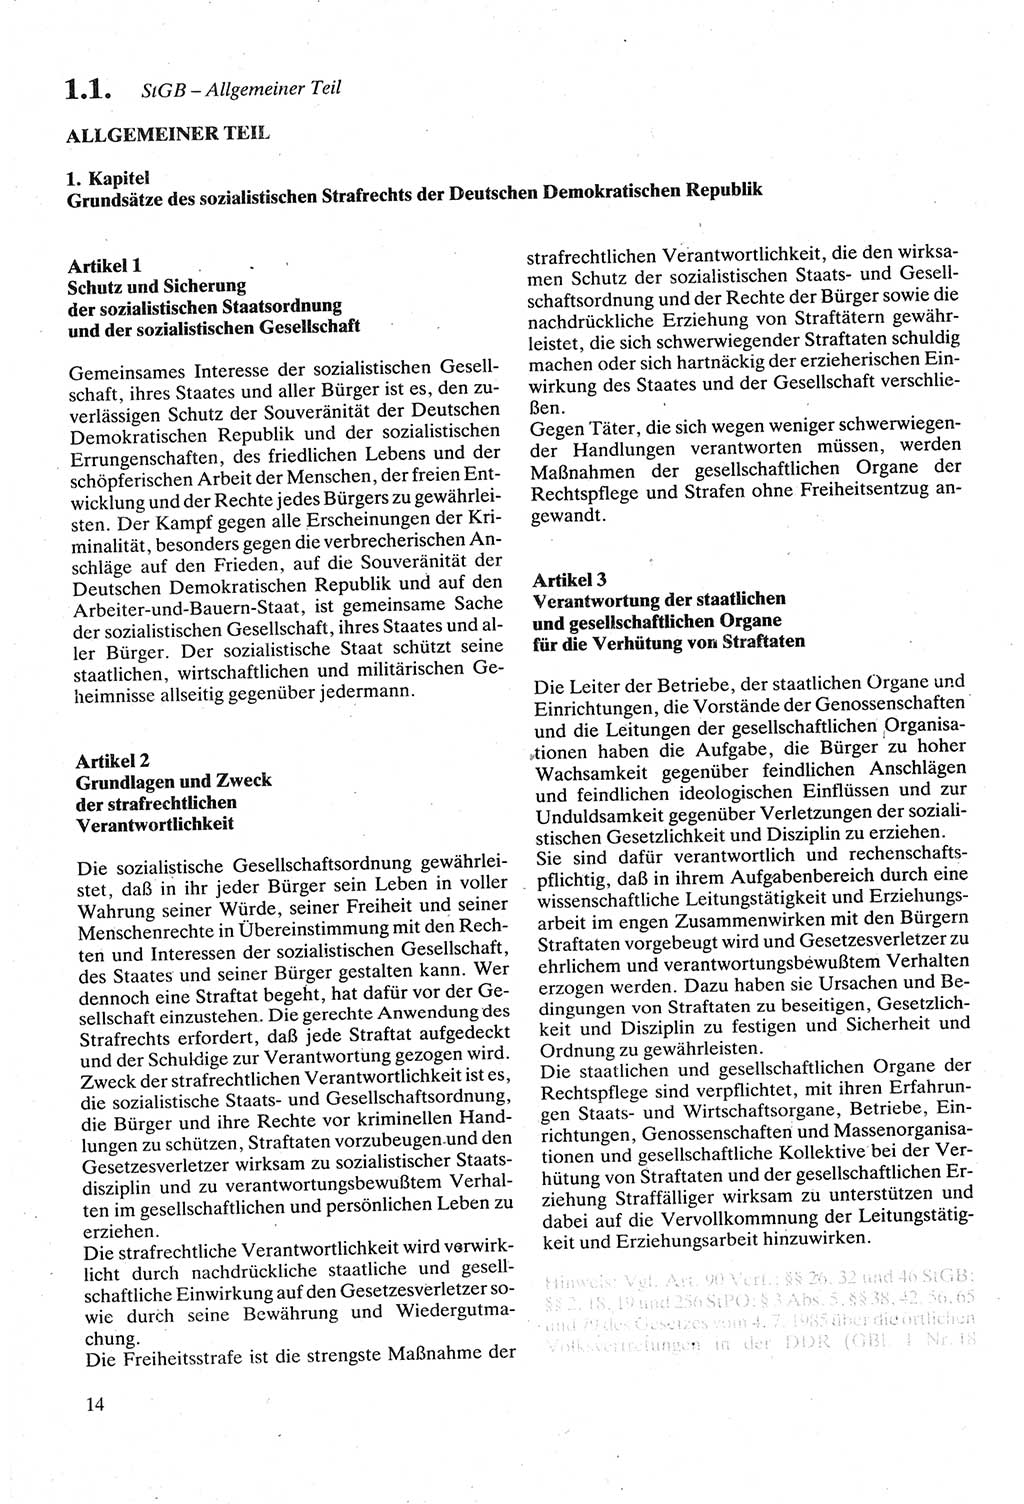 Strafgesetzbuch (StGB) der Deutschen Demokratischen Republik (DDR) sowie angrenzende Gesetze und Bestimmungen 1979, Seite 14 (StGB DDR Ges. Best. 1979, S. 14)